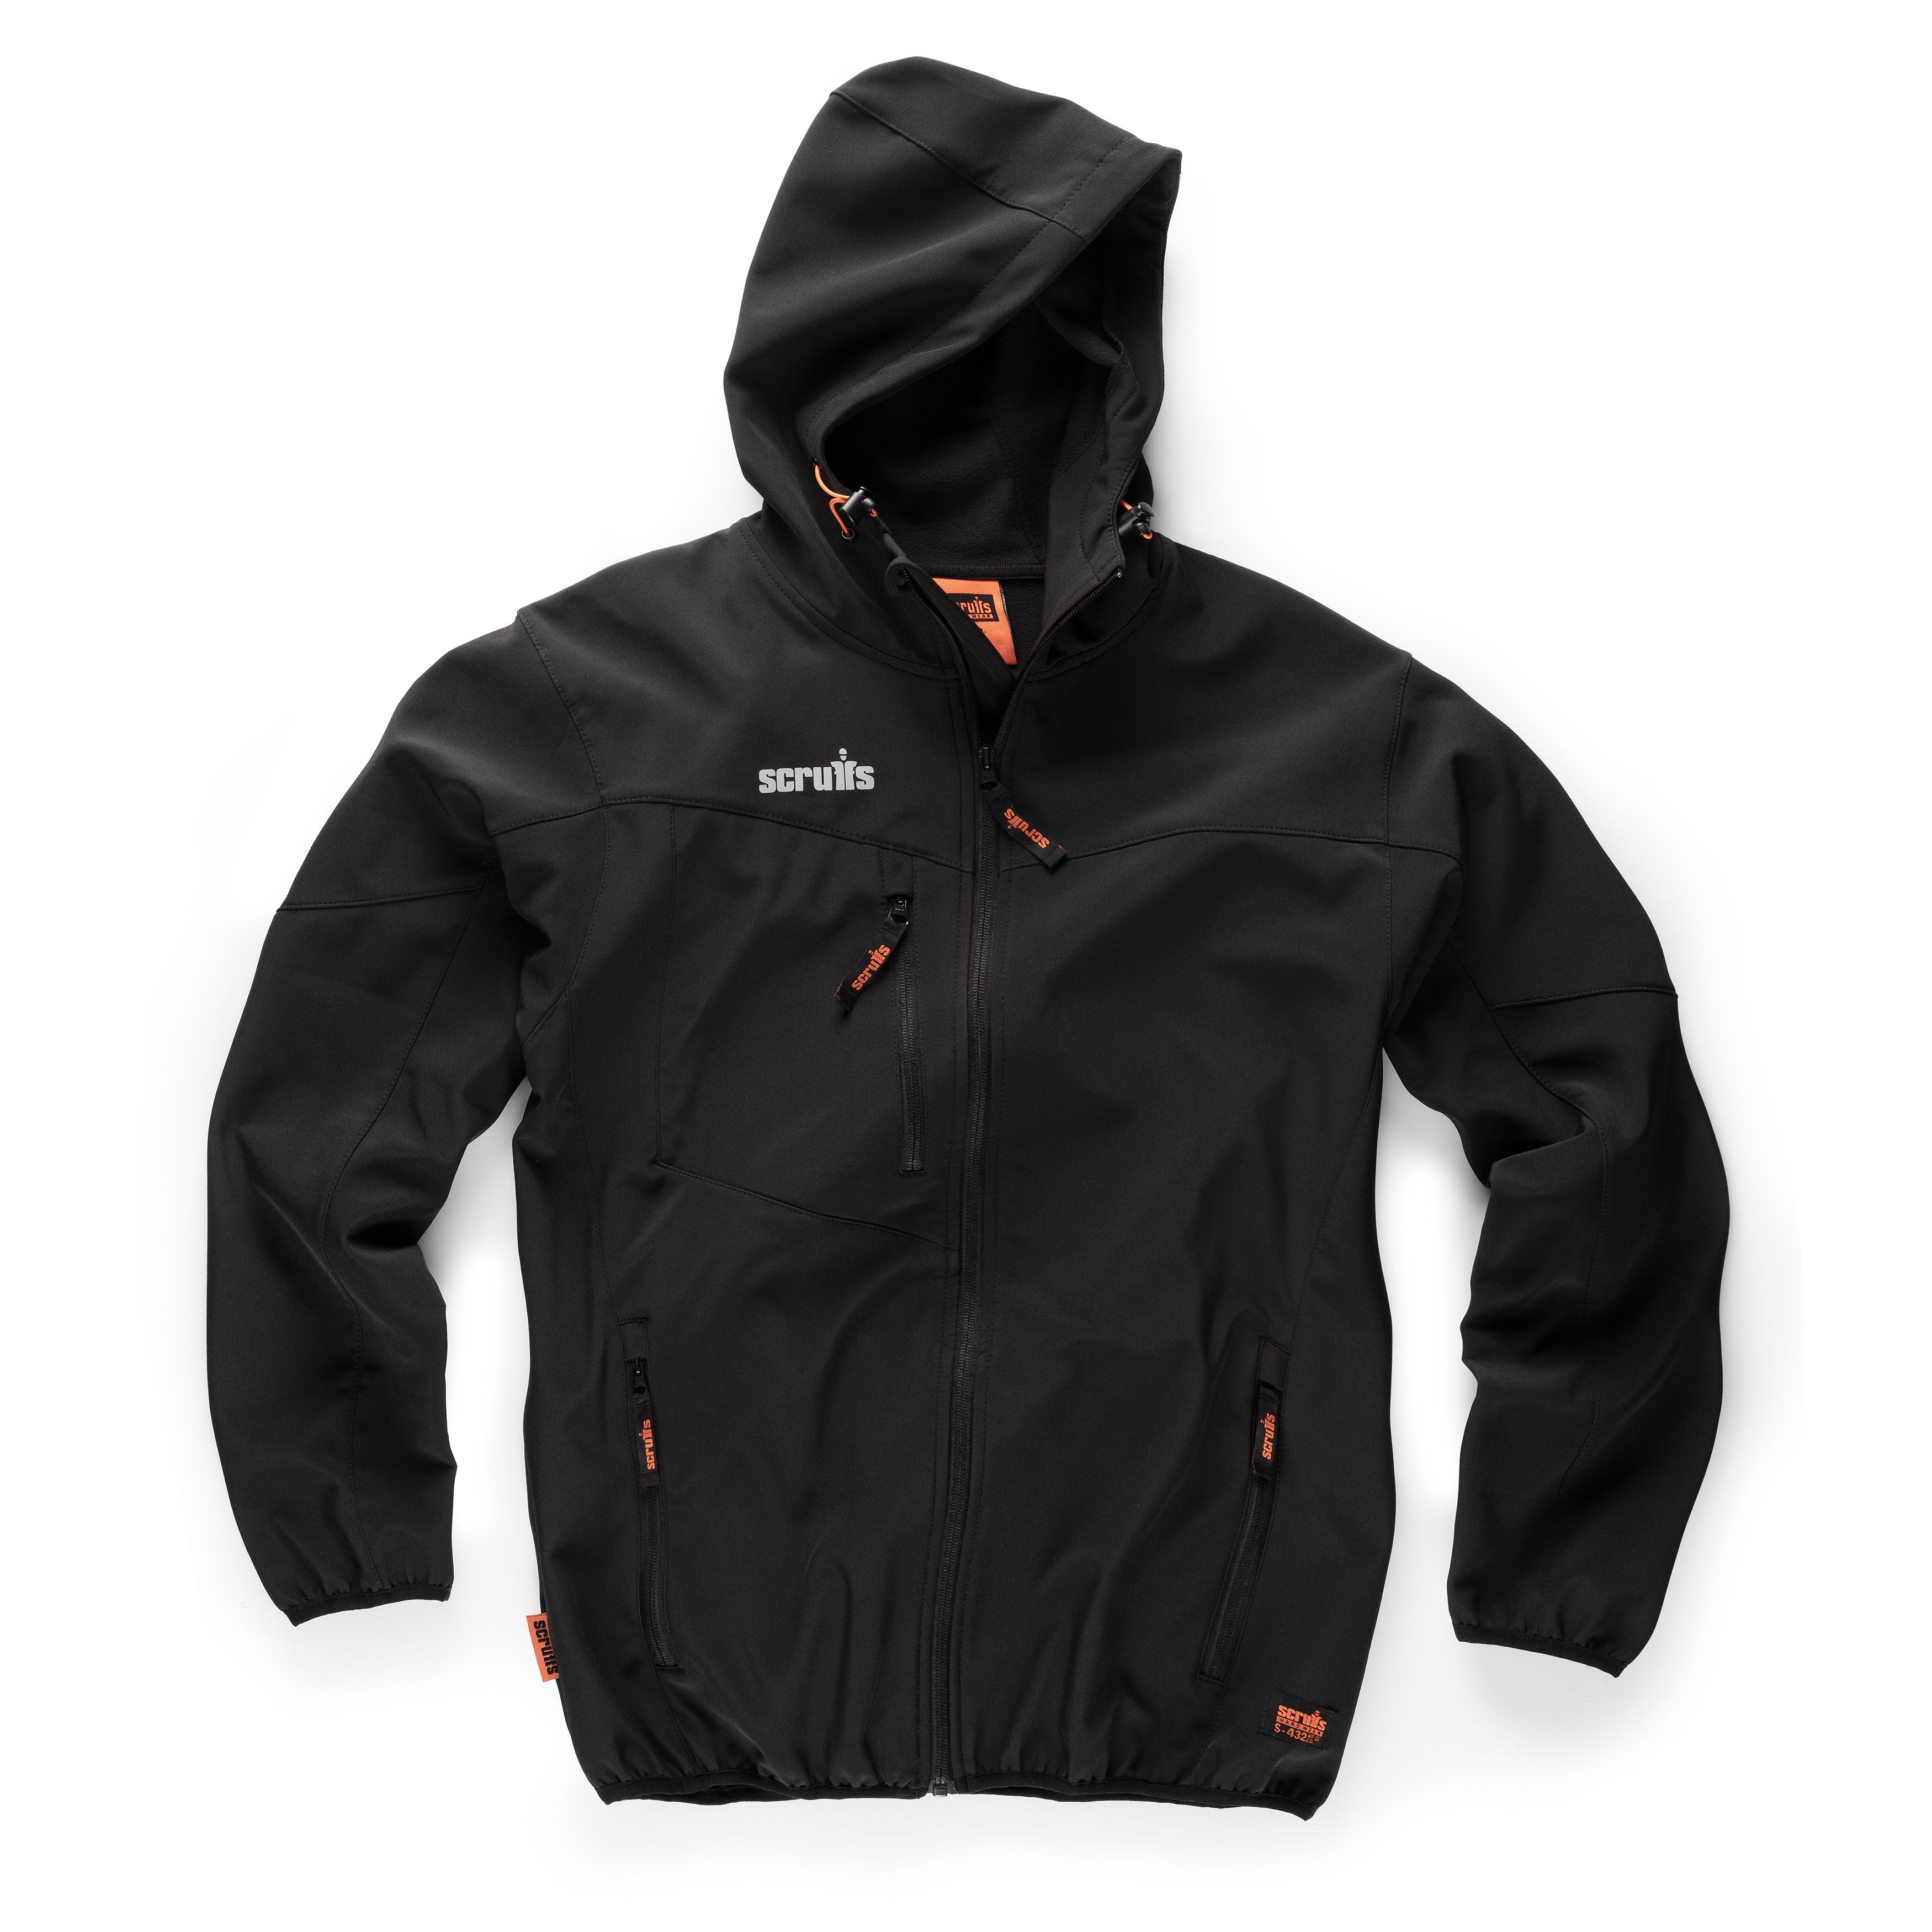 Scruffs Worker Black Men's Softshell jacket, Medium